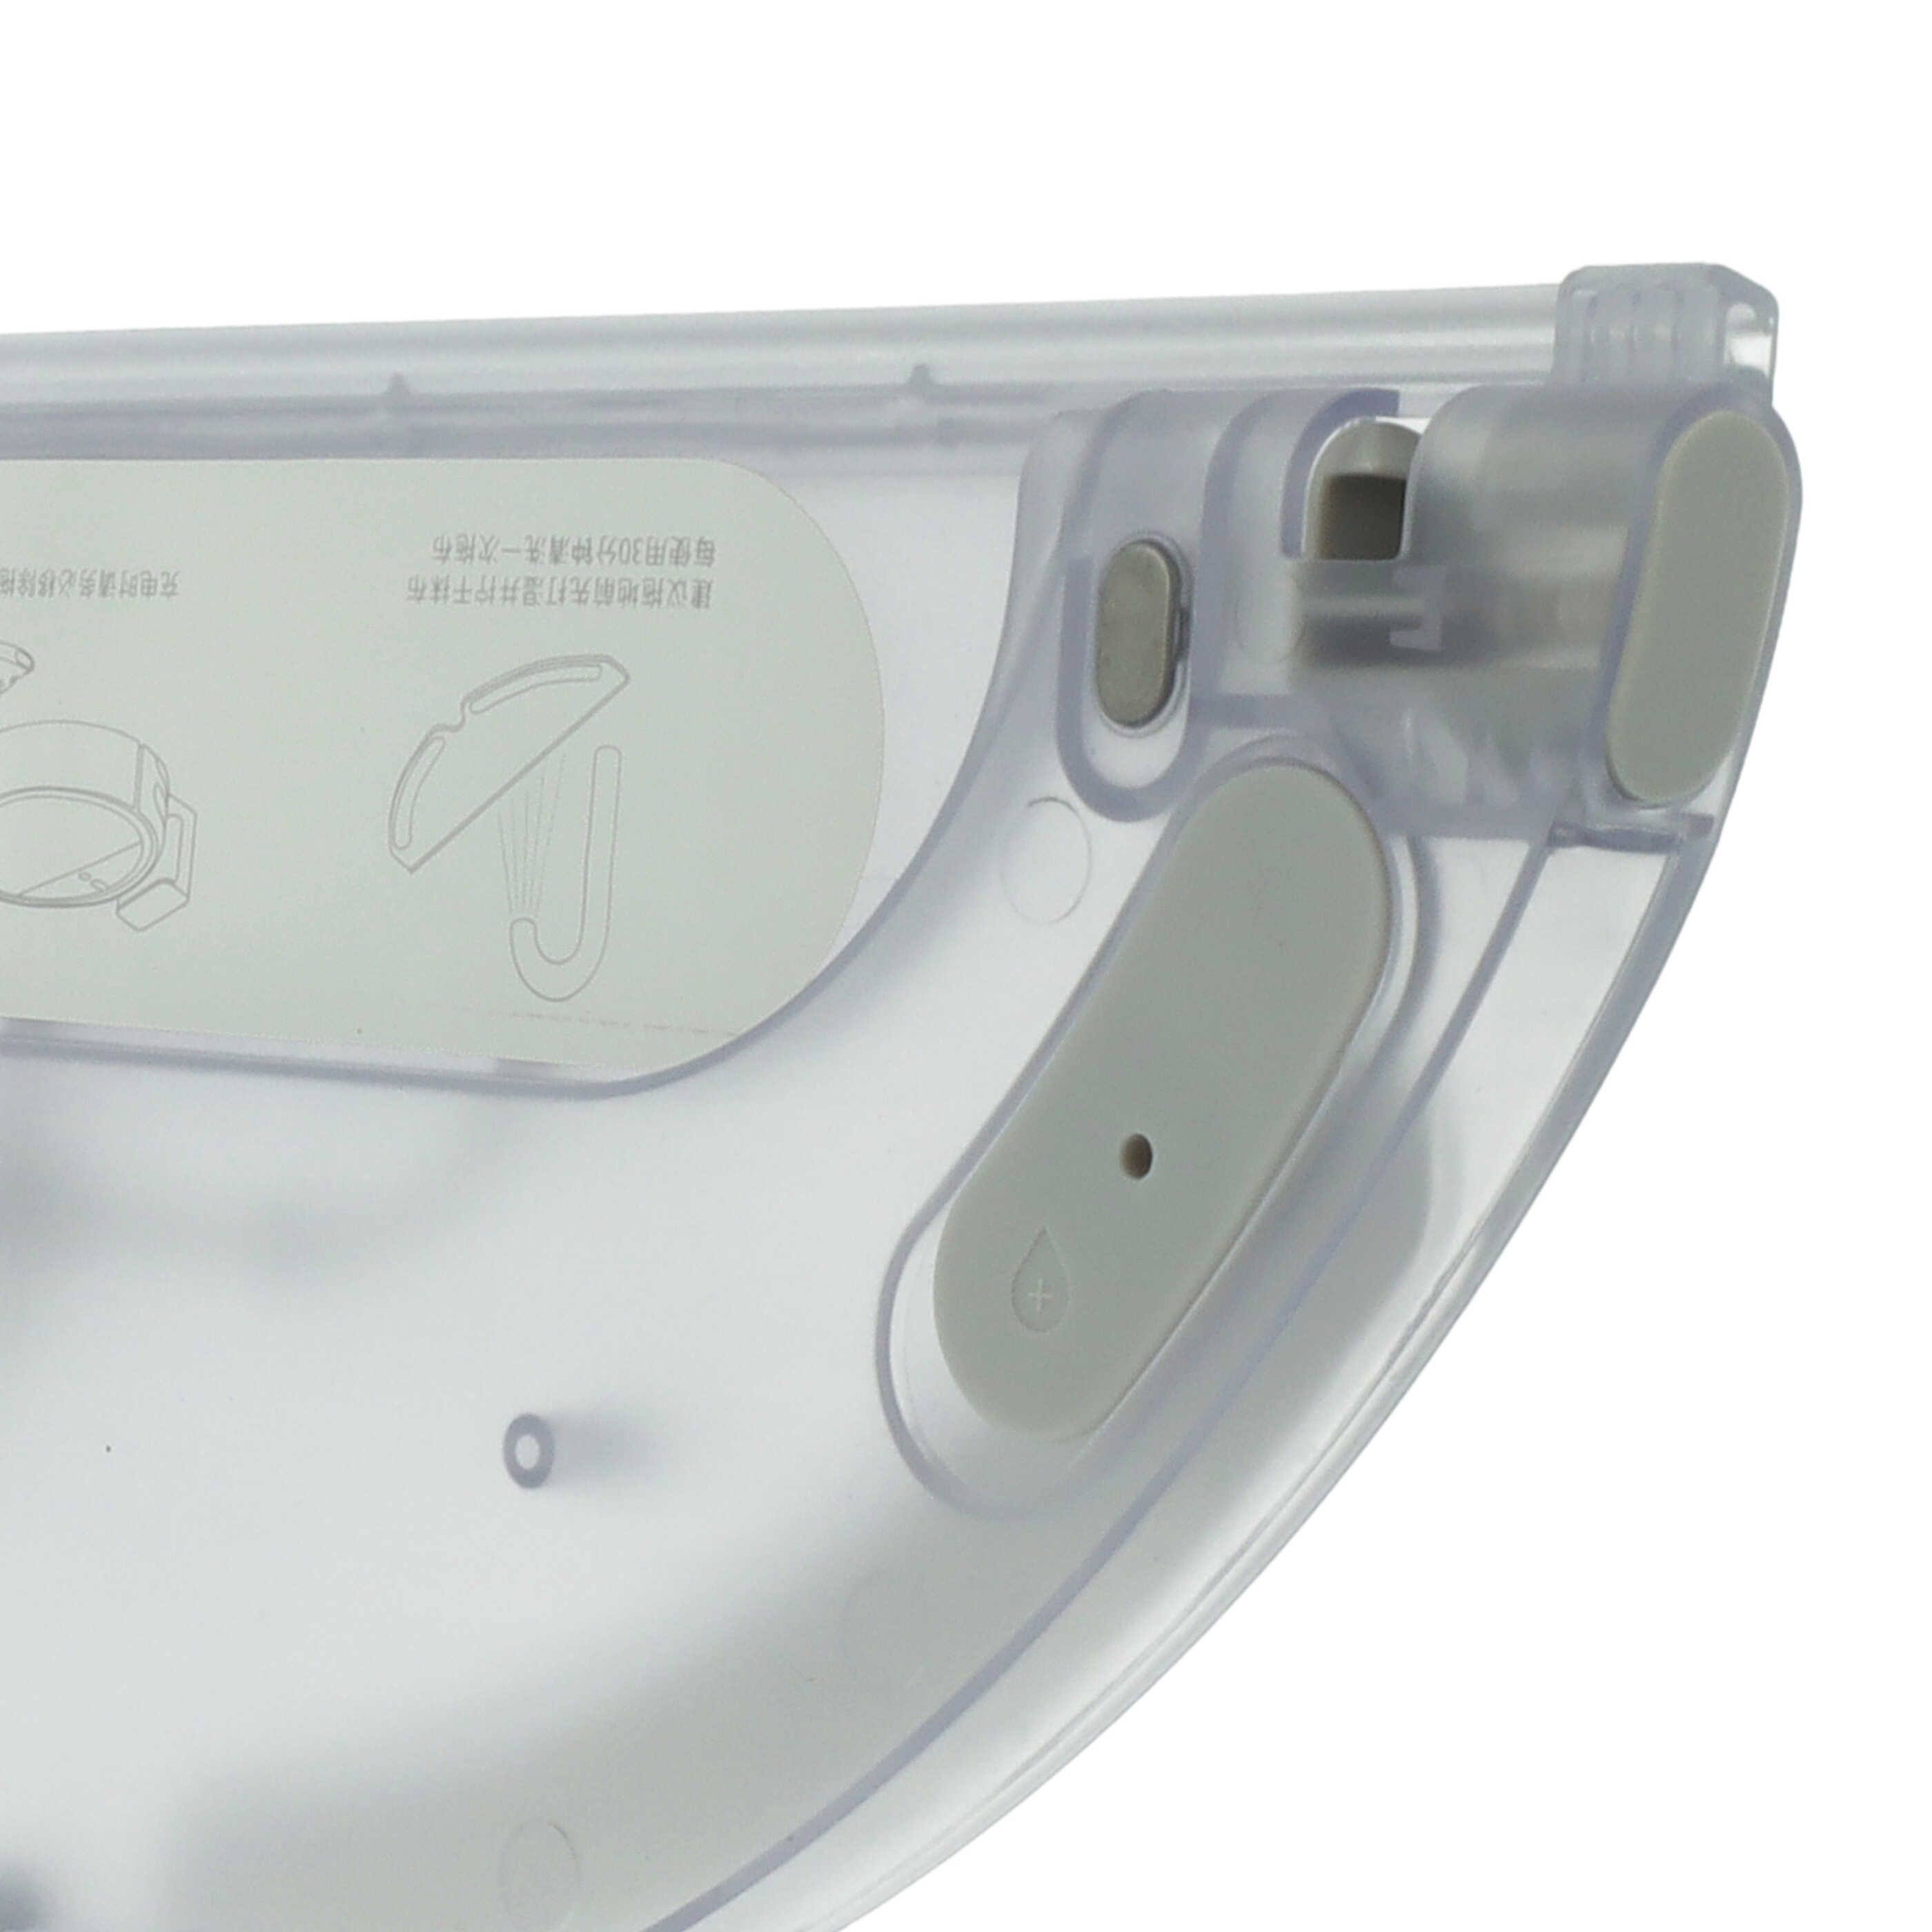 Support pour lingette pour robot aspirateur Xiaomi Mijia 1C - 32,5 x 13,4 x 1,6 cm, 190 g